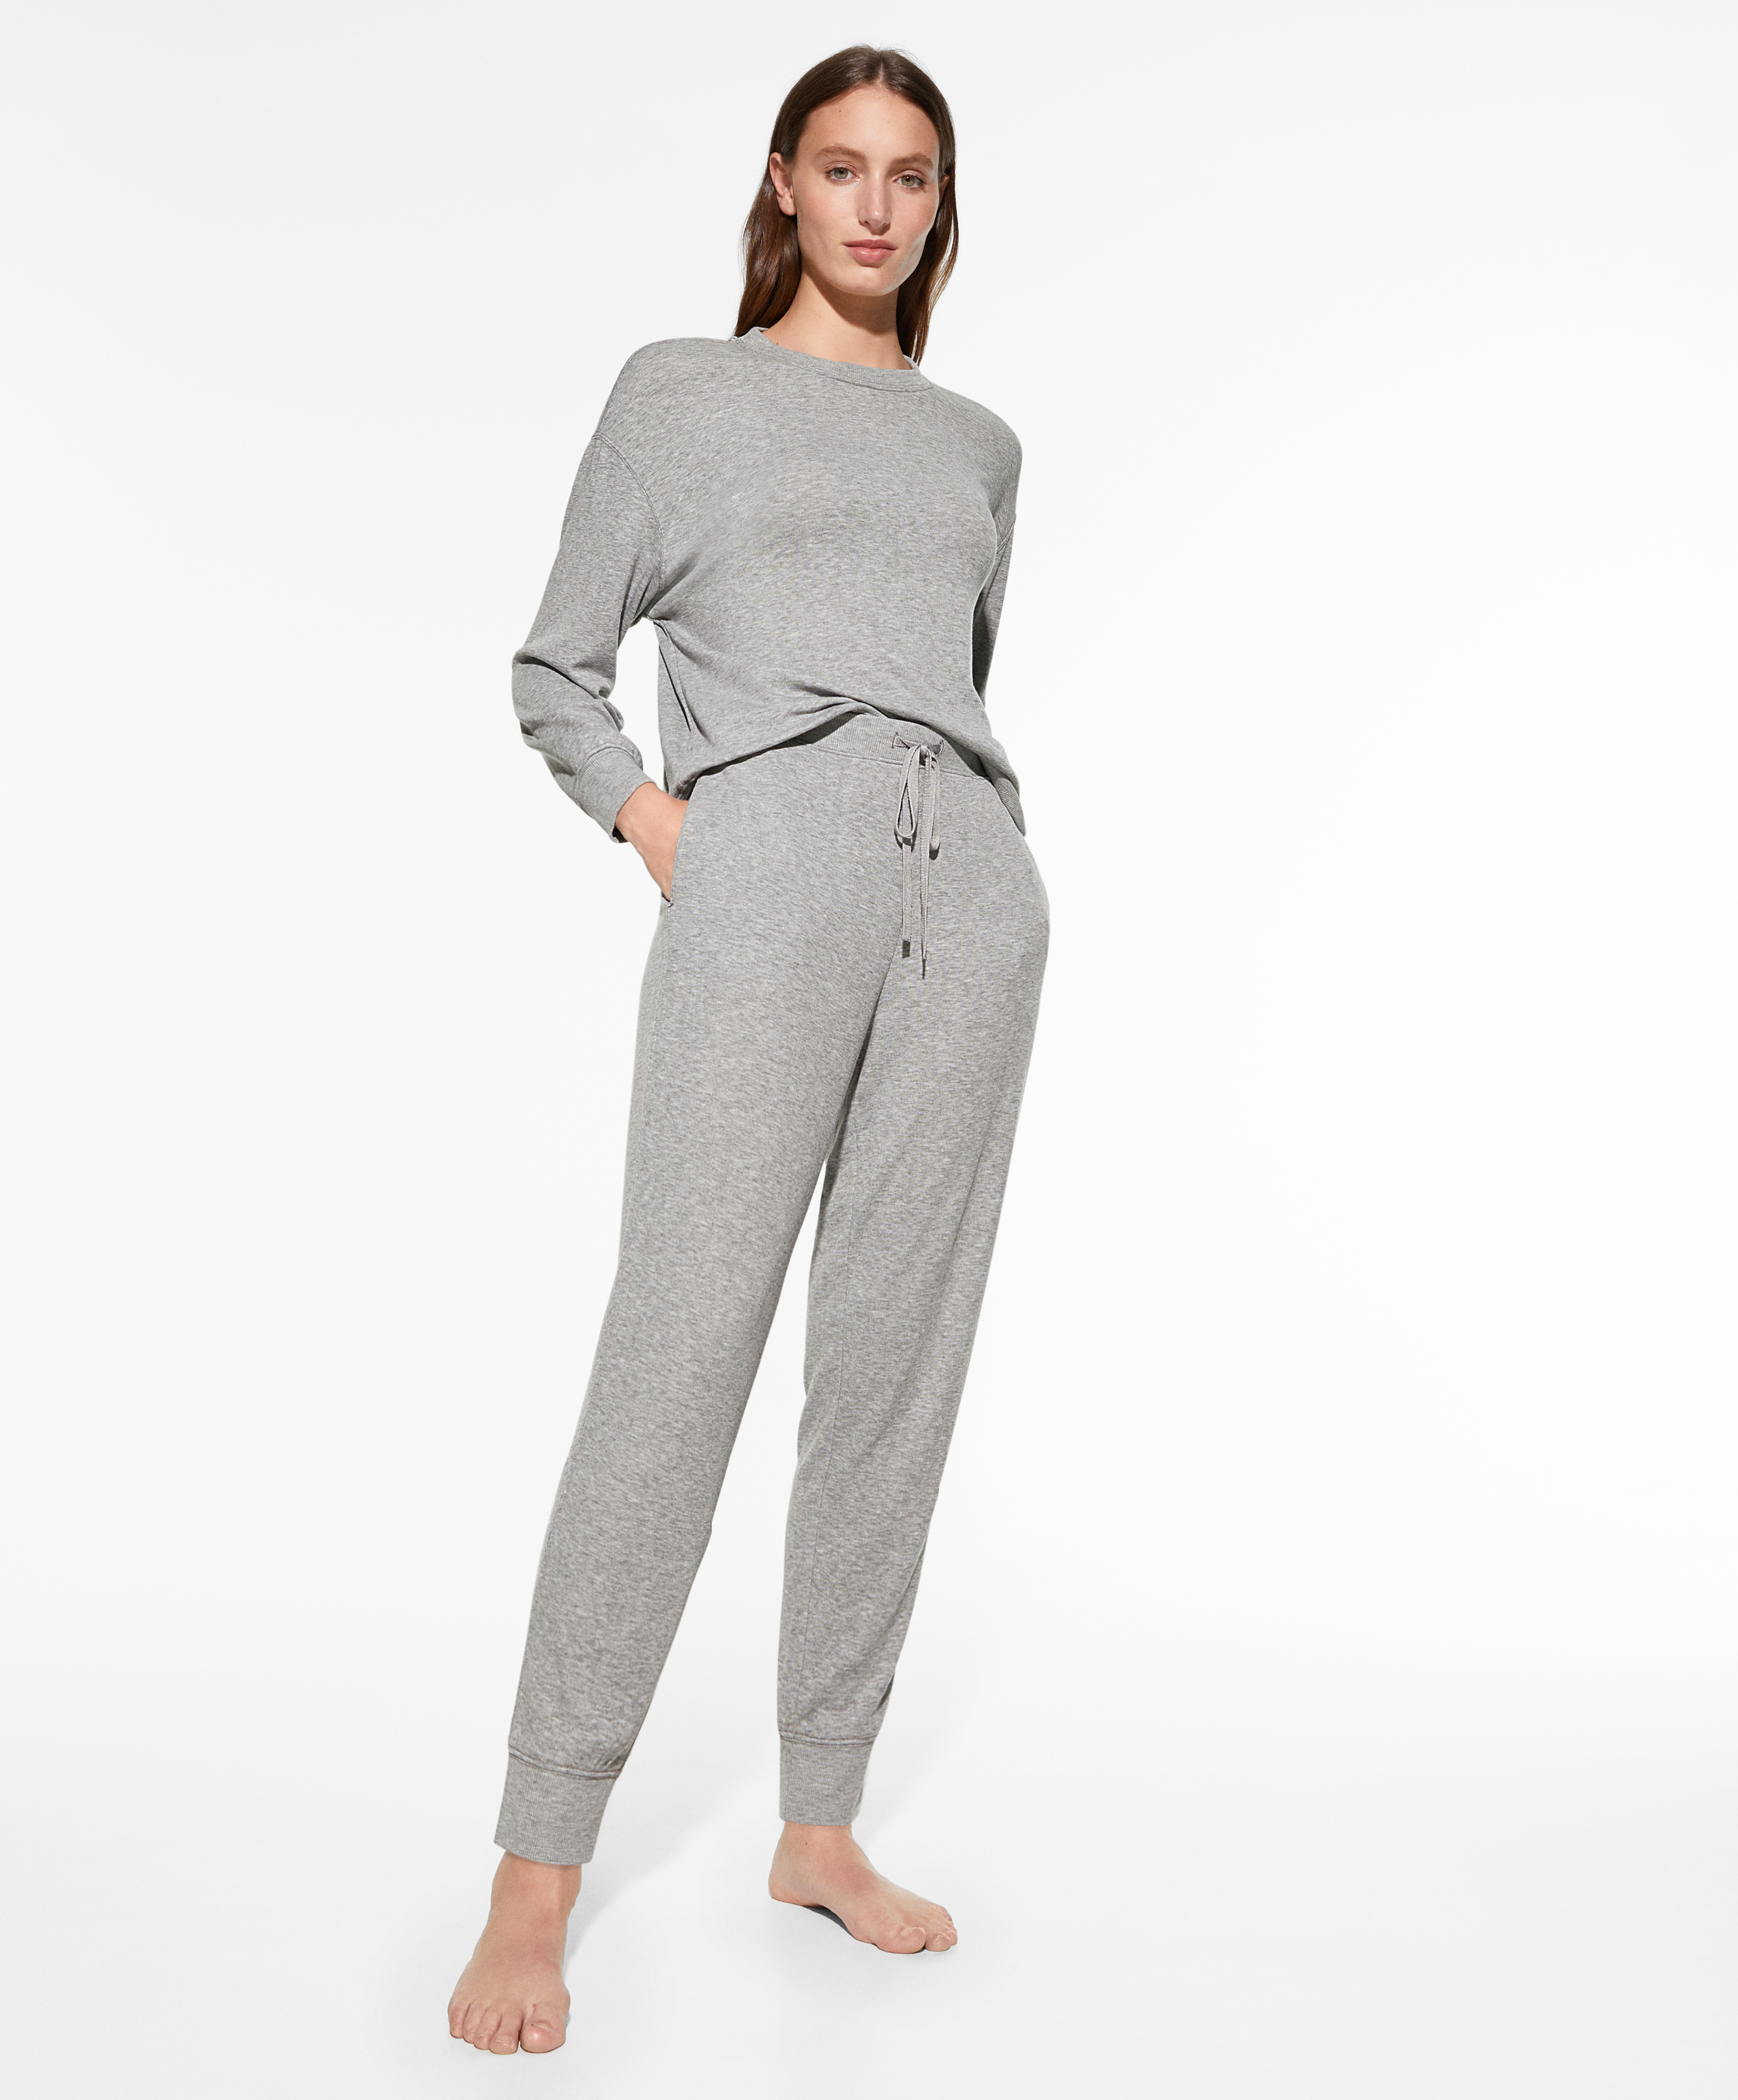 Conjunto pijama largo soft-touch gris